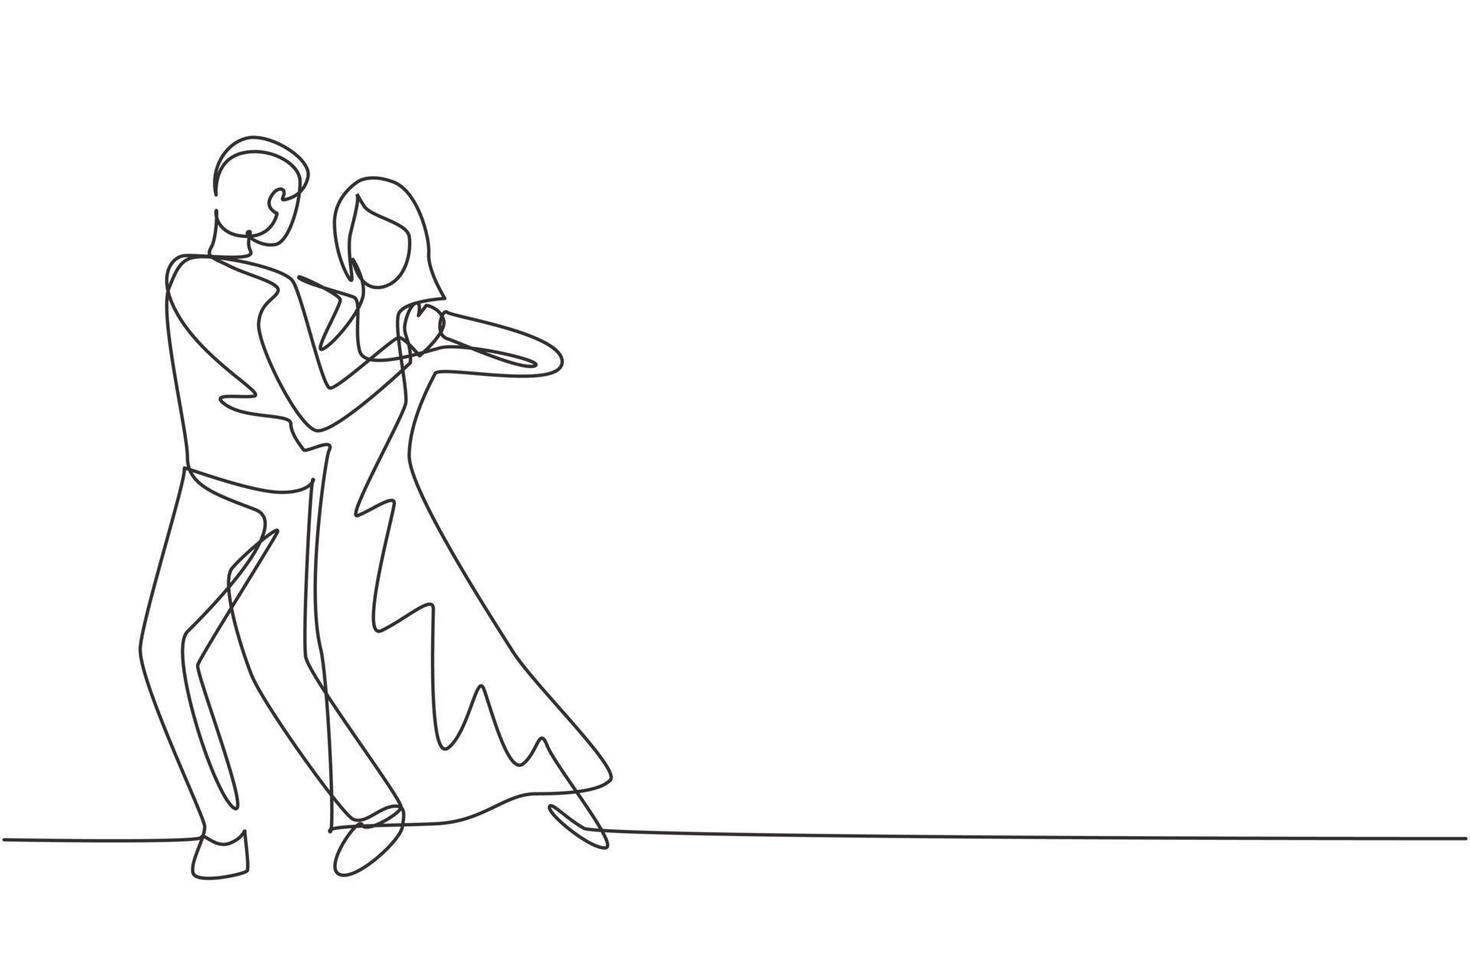 único um desenho de linha homem mulher dançarina profissional casal dançando tango, valsa dança na pista de dança do concurso. estilo de vida feliz. ilustração em vetor gráfico design moderno linha contínua